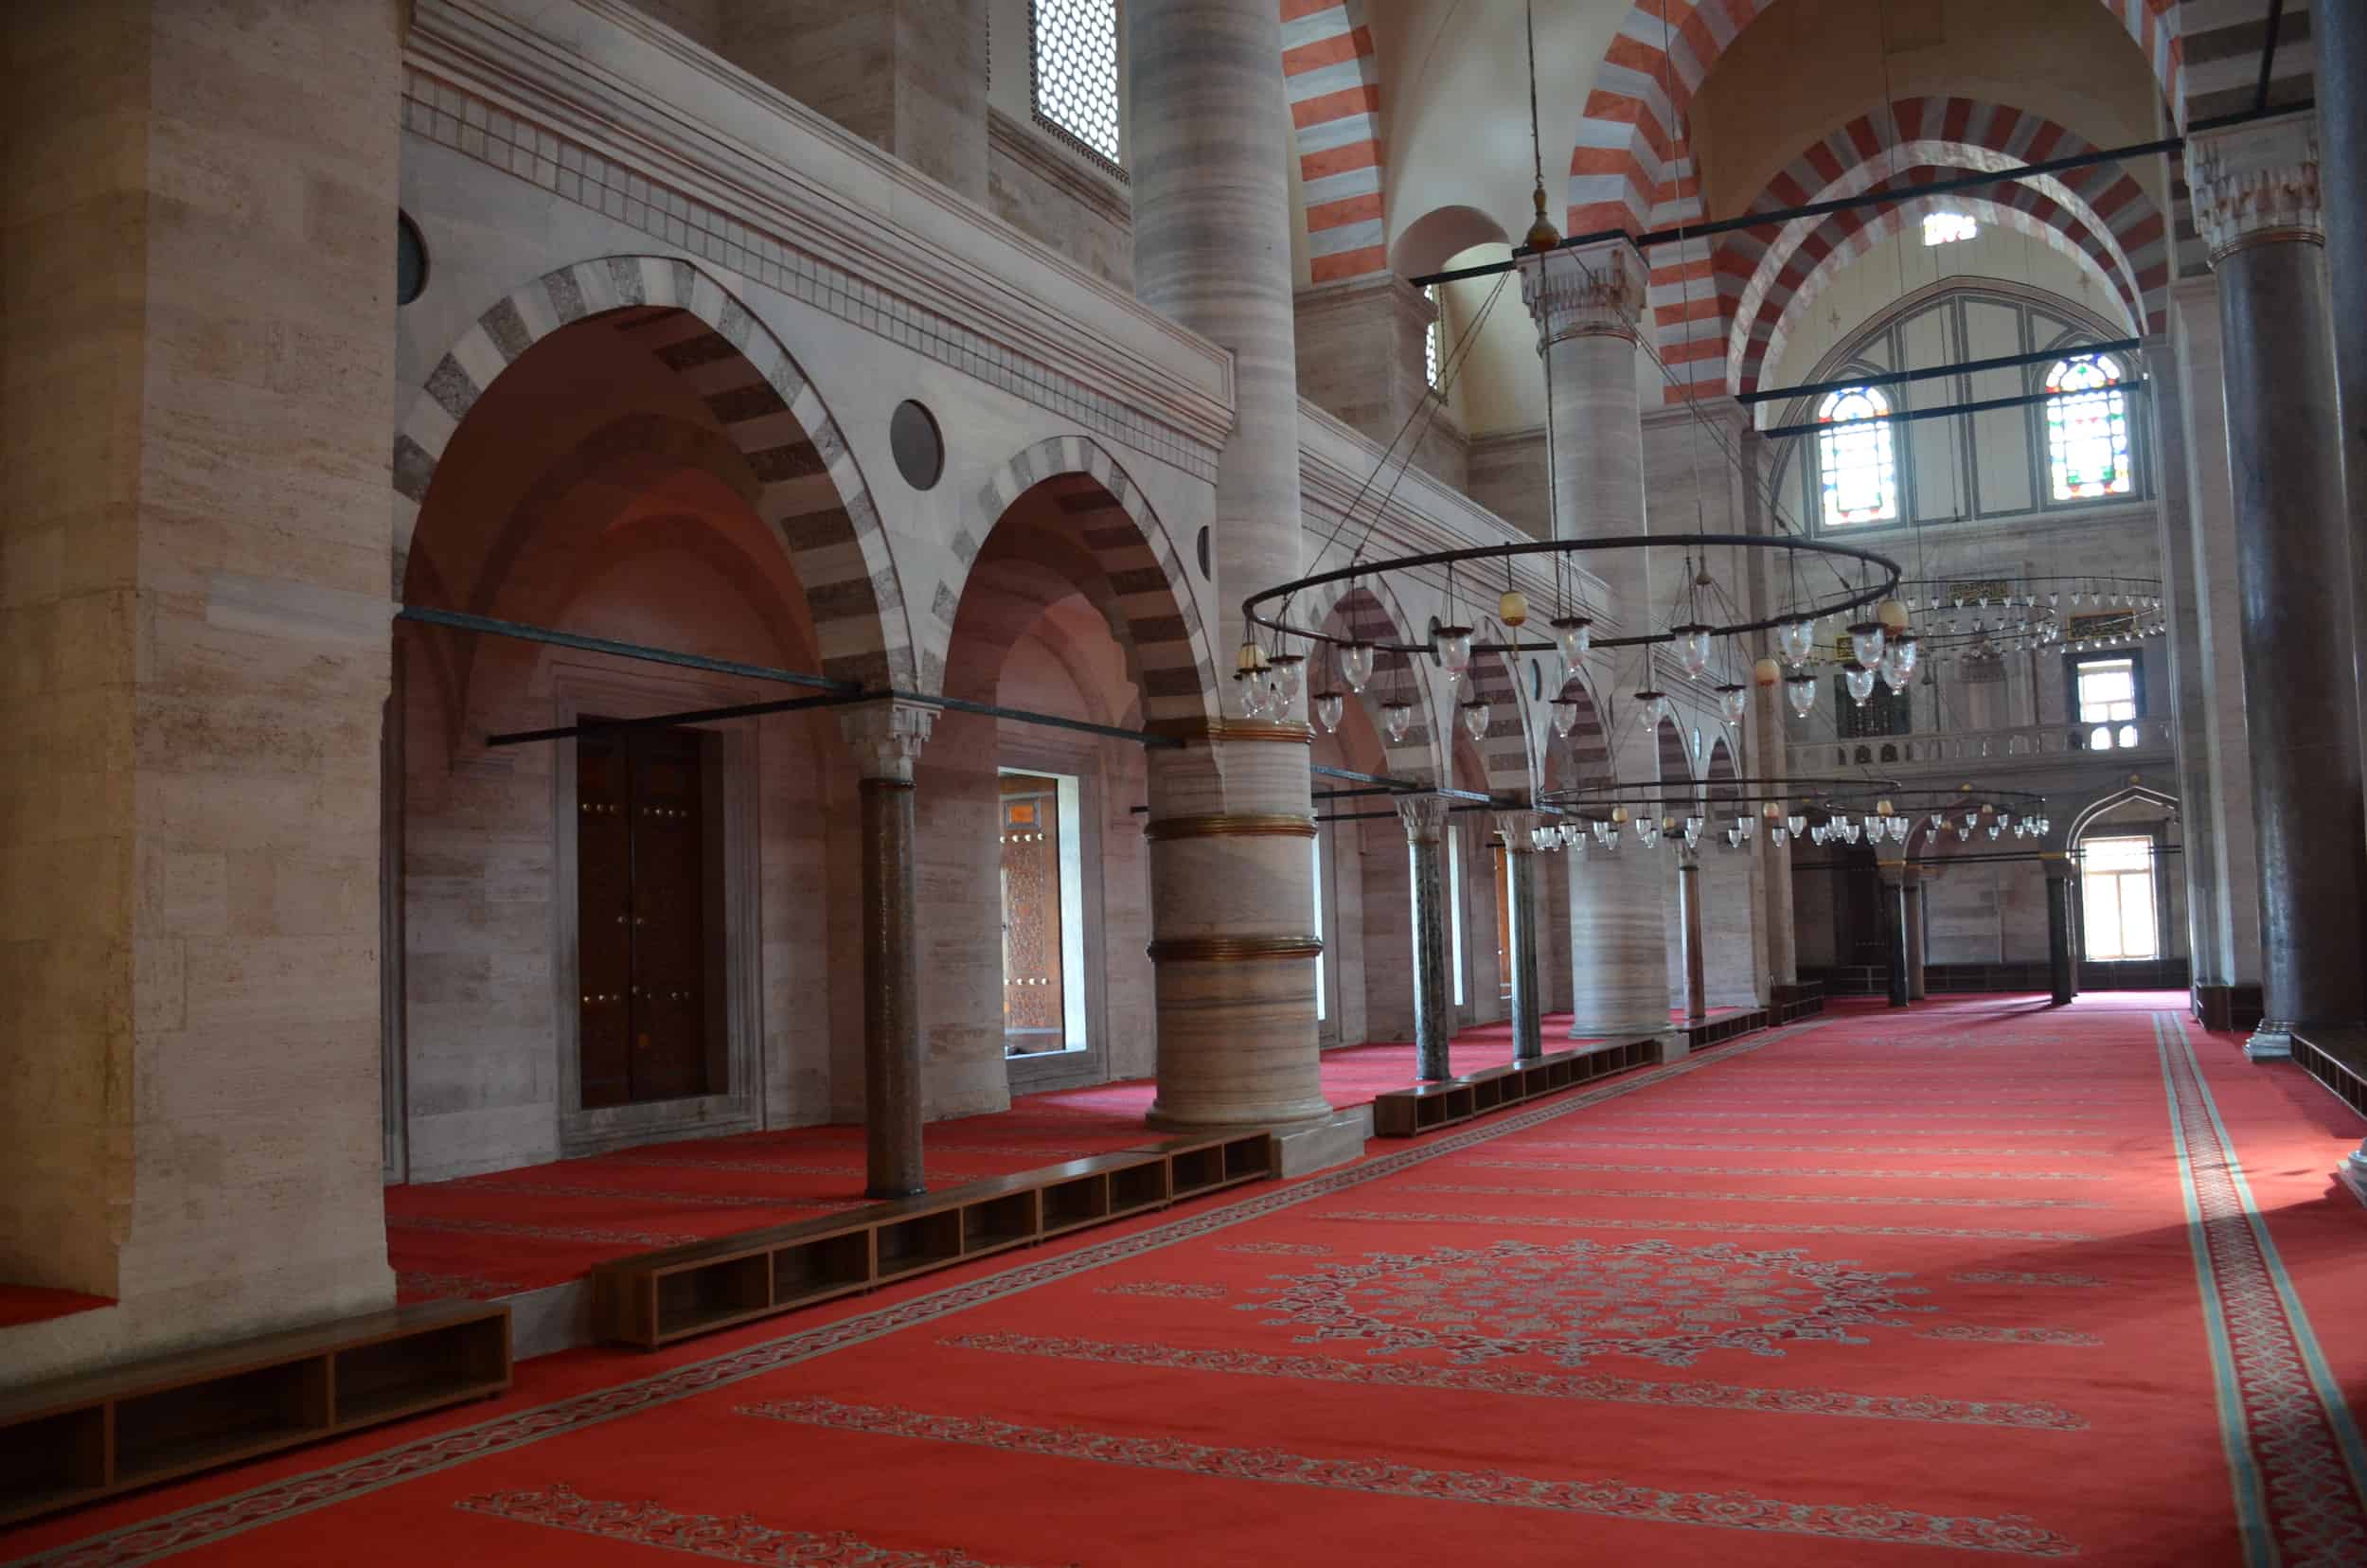 North aisle of the Süleymaniye Mosque in Istanbul, Turkey